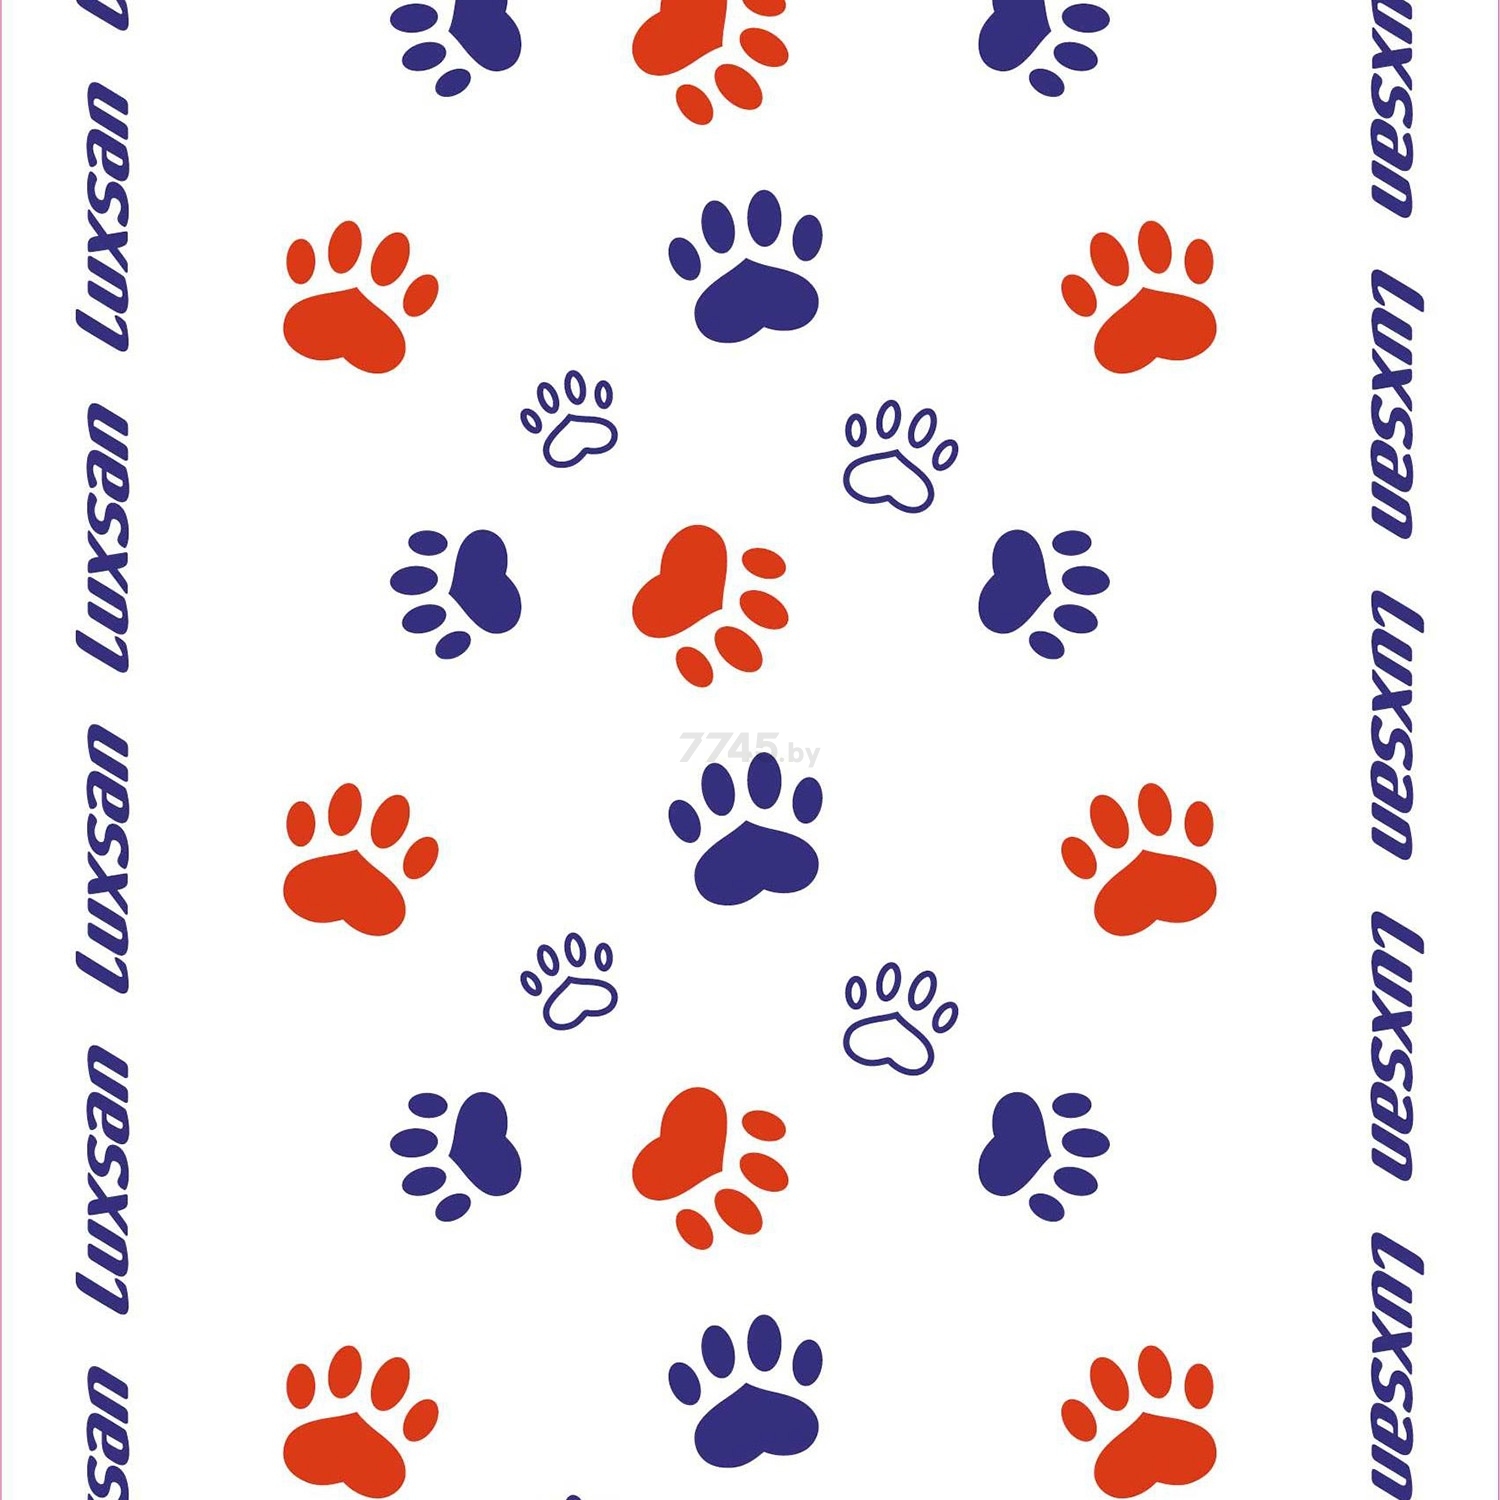 Пеленки одноразовые для животных LUXSAN Premium 60х60 см 20 штук (LSN750434) - Фото 2